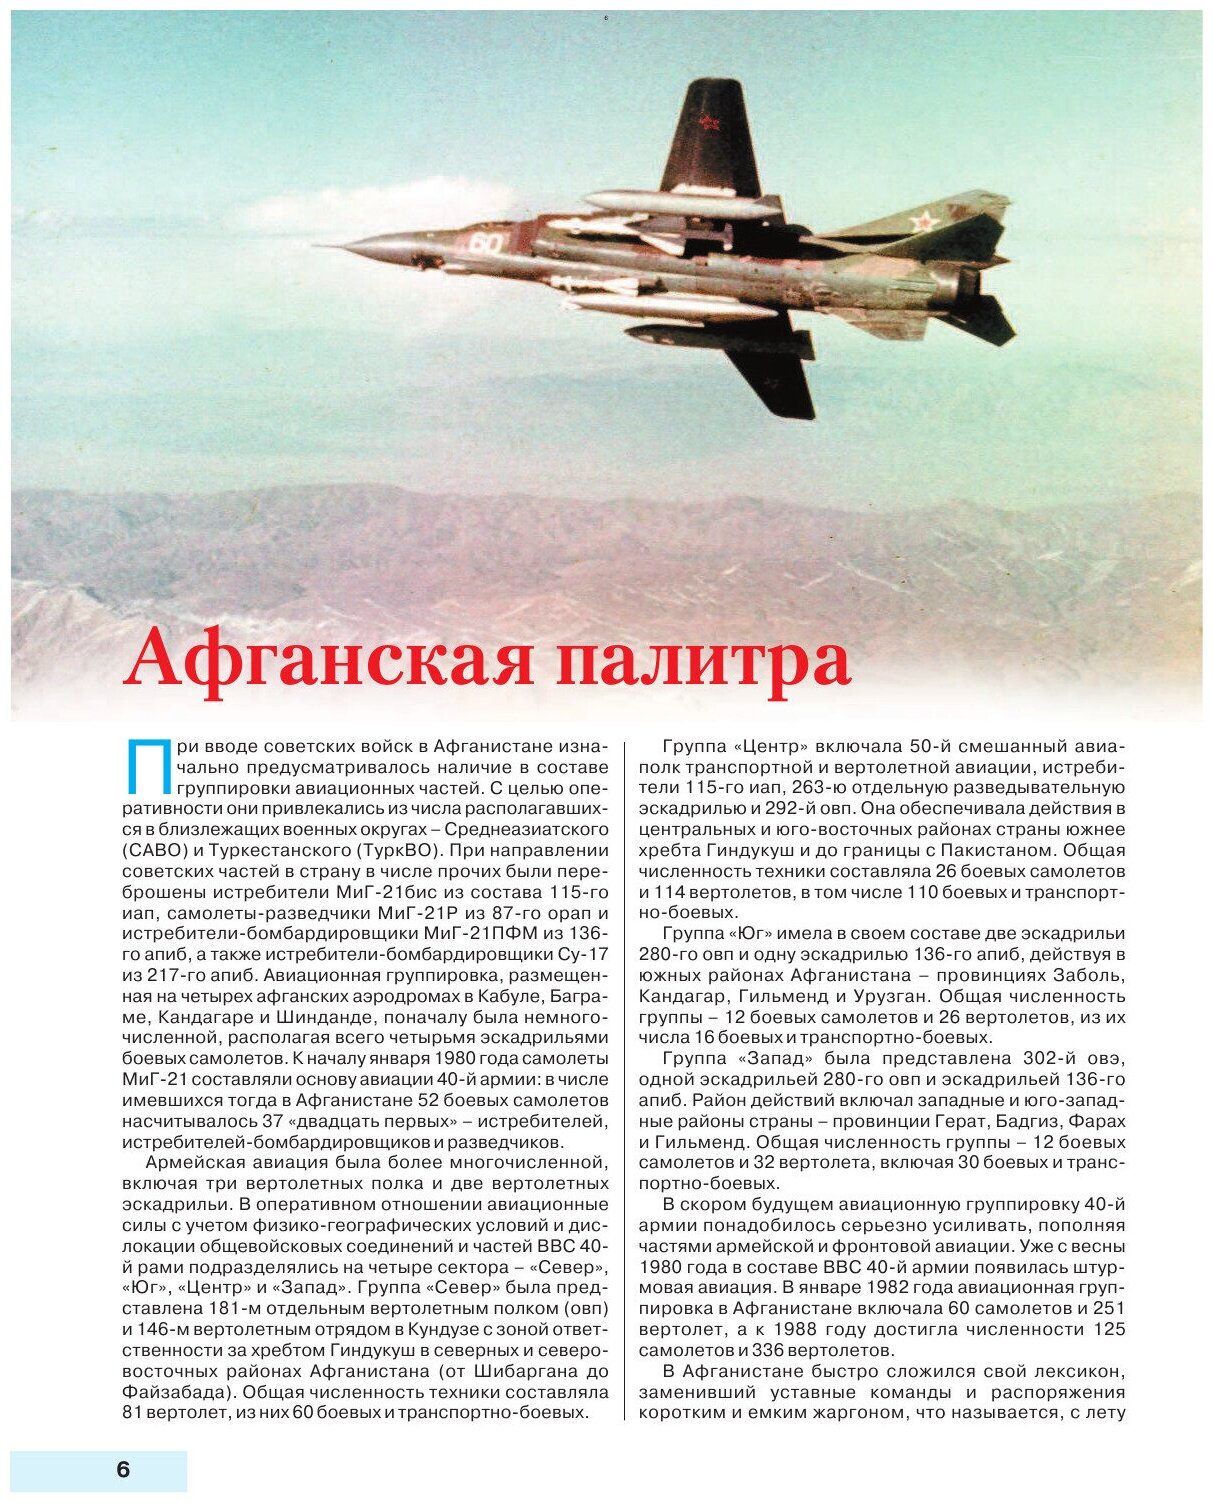 Камуфляж и бортовые эмблемы авиатехники советских ВВС в афганской кампании - фото №8